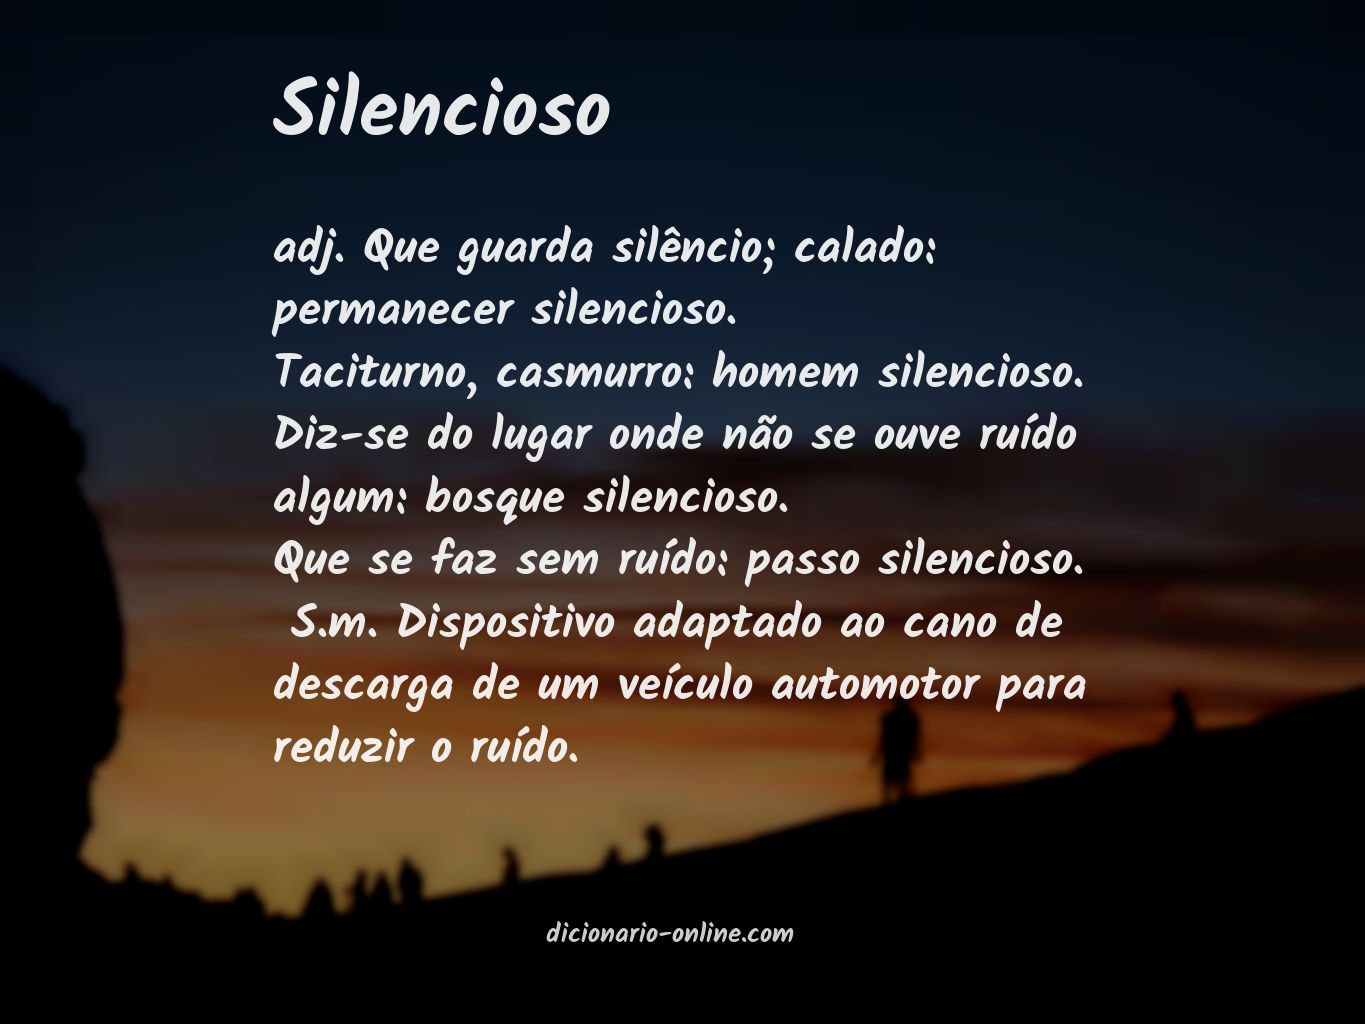 Significado de silencioso